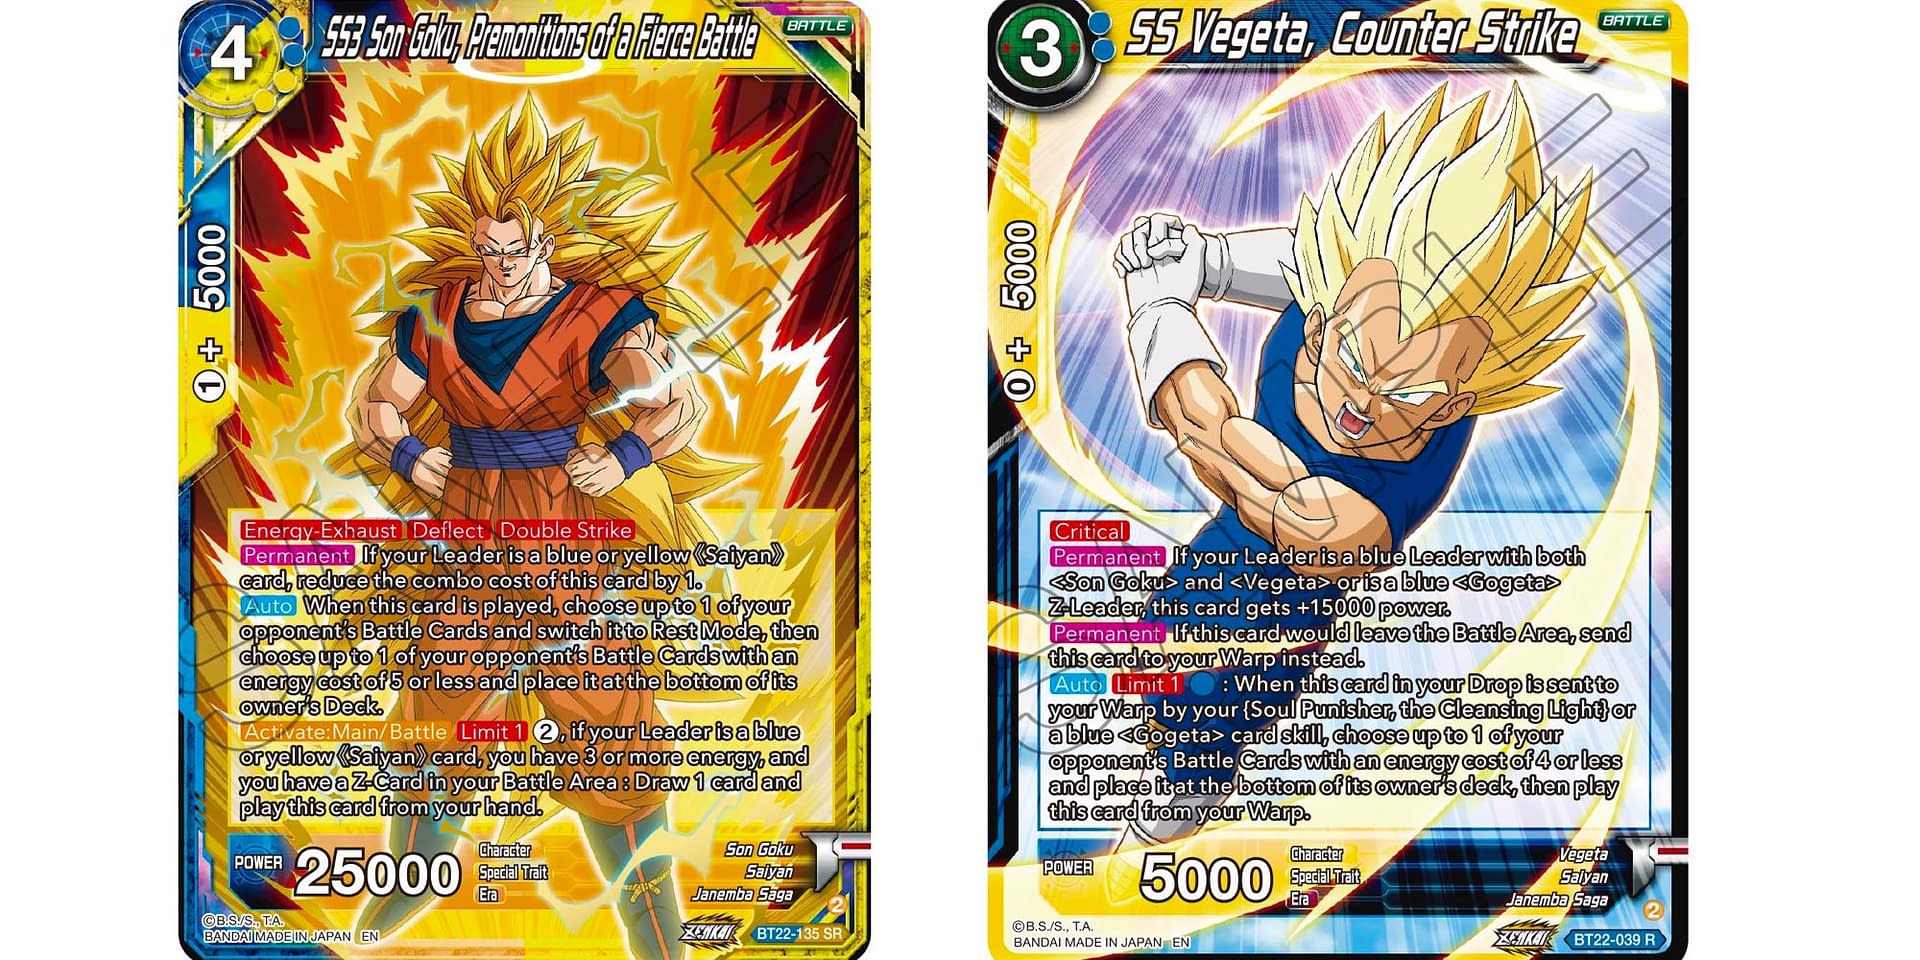 SS3 Son Goku, Premonitions of a Fierce Battle (SPR) - Critical